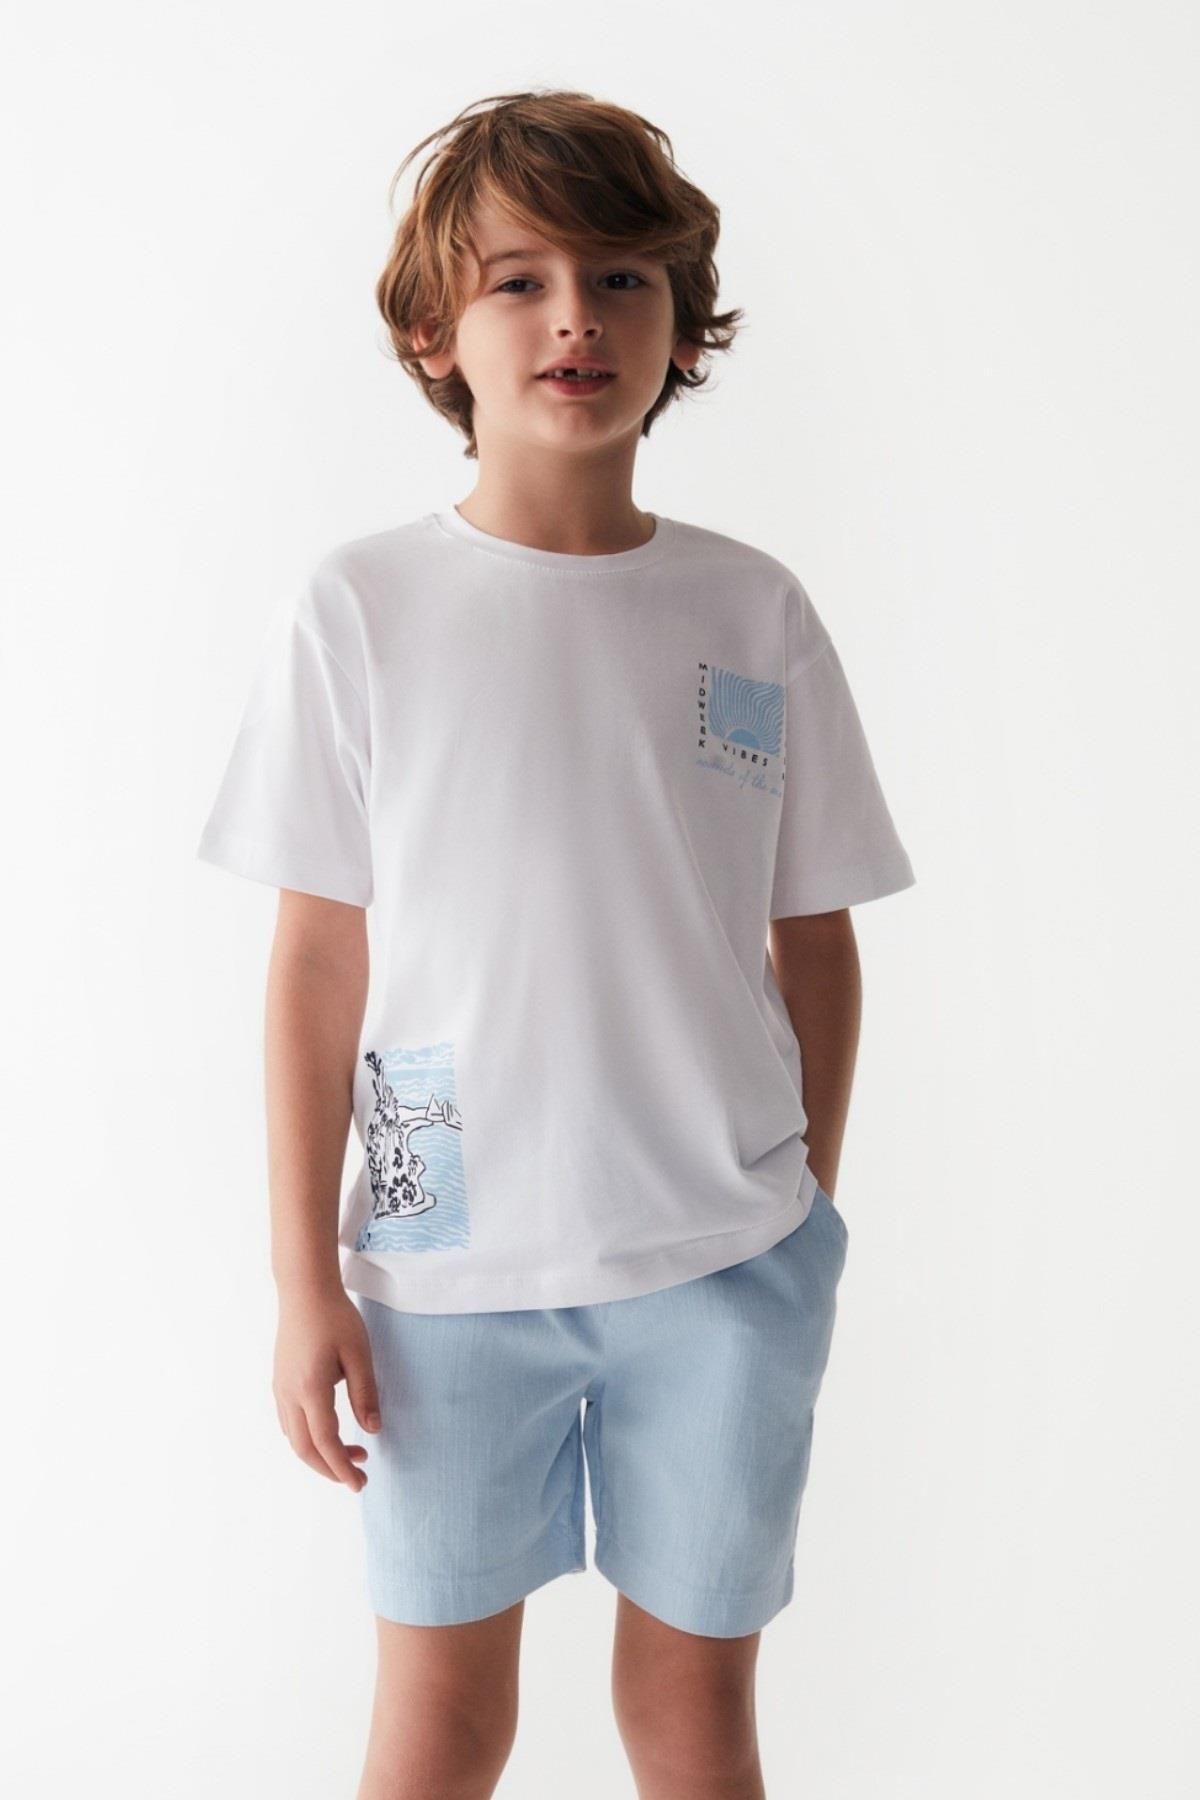 Nk Kids Erkek Çocuk Baskılı Kısa Kol T-shirt 46525 Beyaz